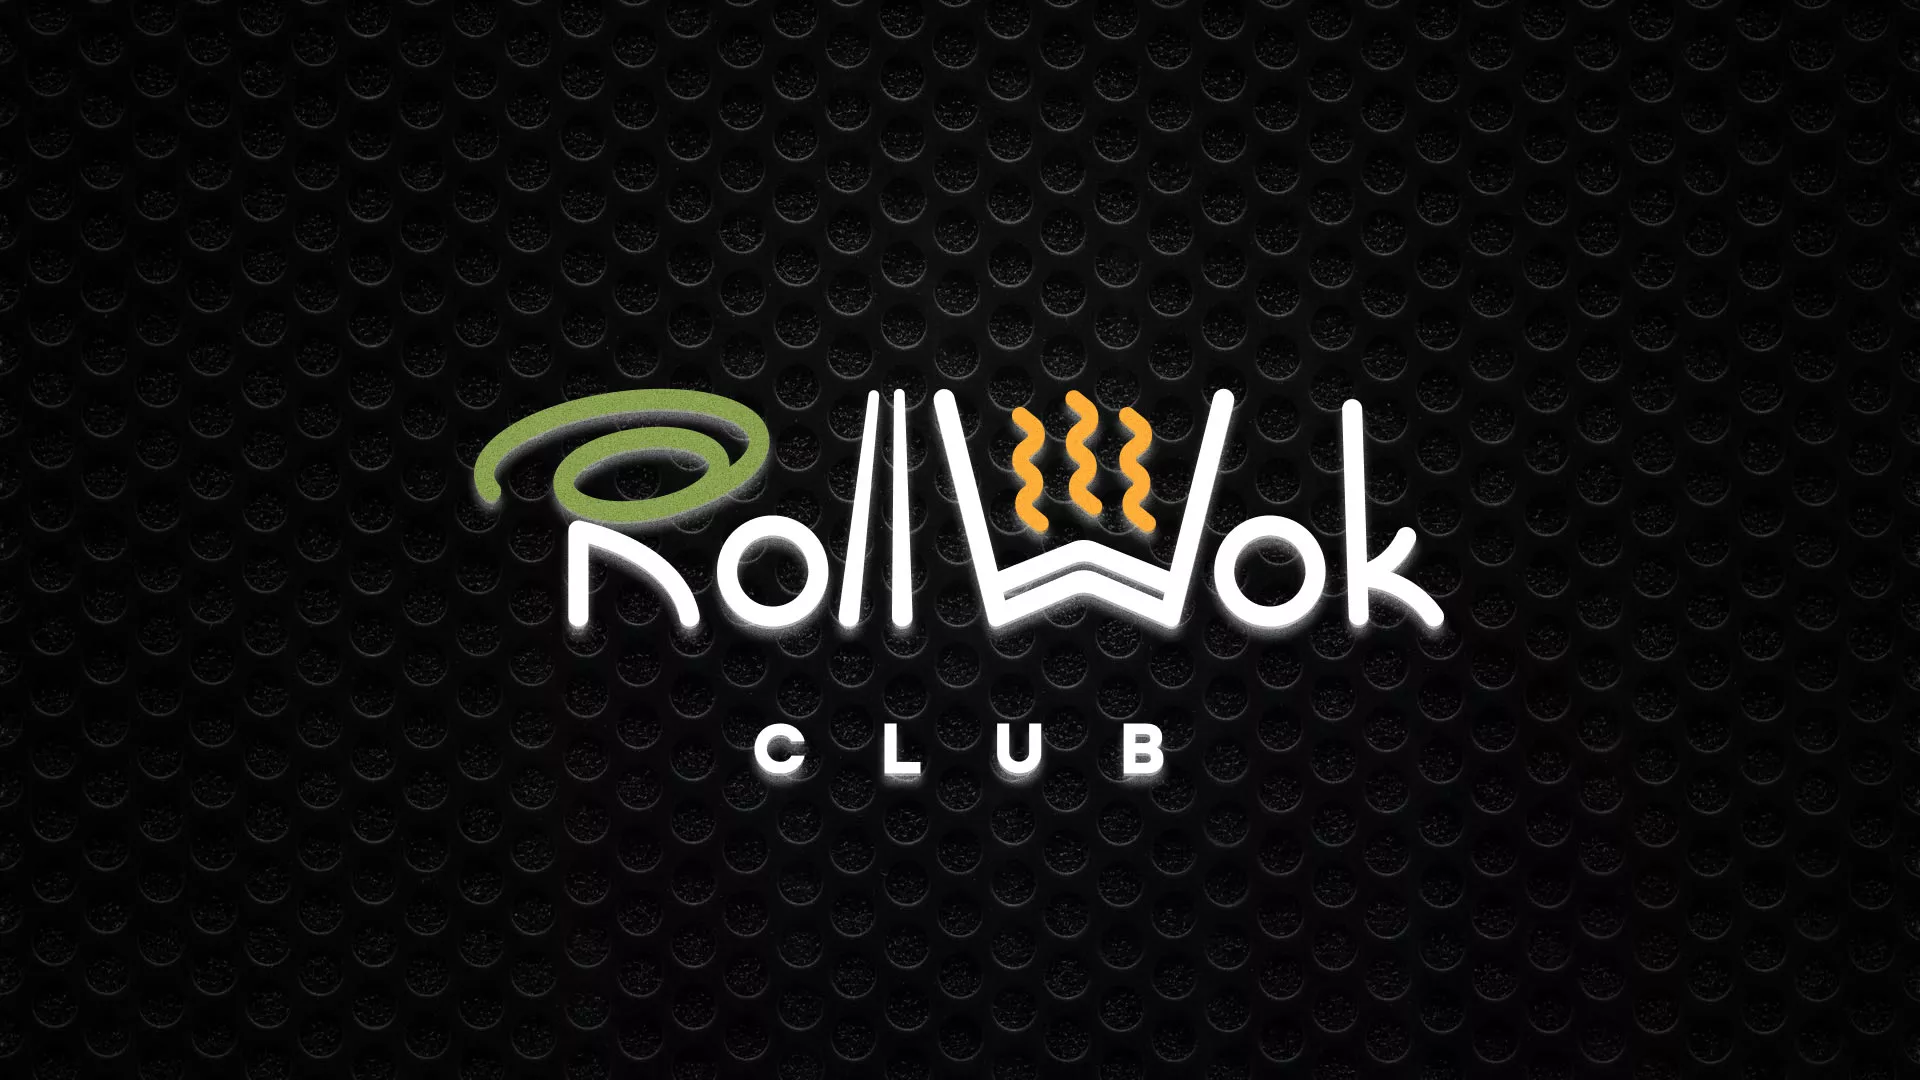 Брендирование торговых точек суши-бара «Roll Wok Club» в Нижнем Новгороде